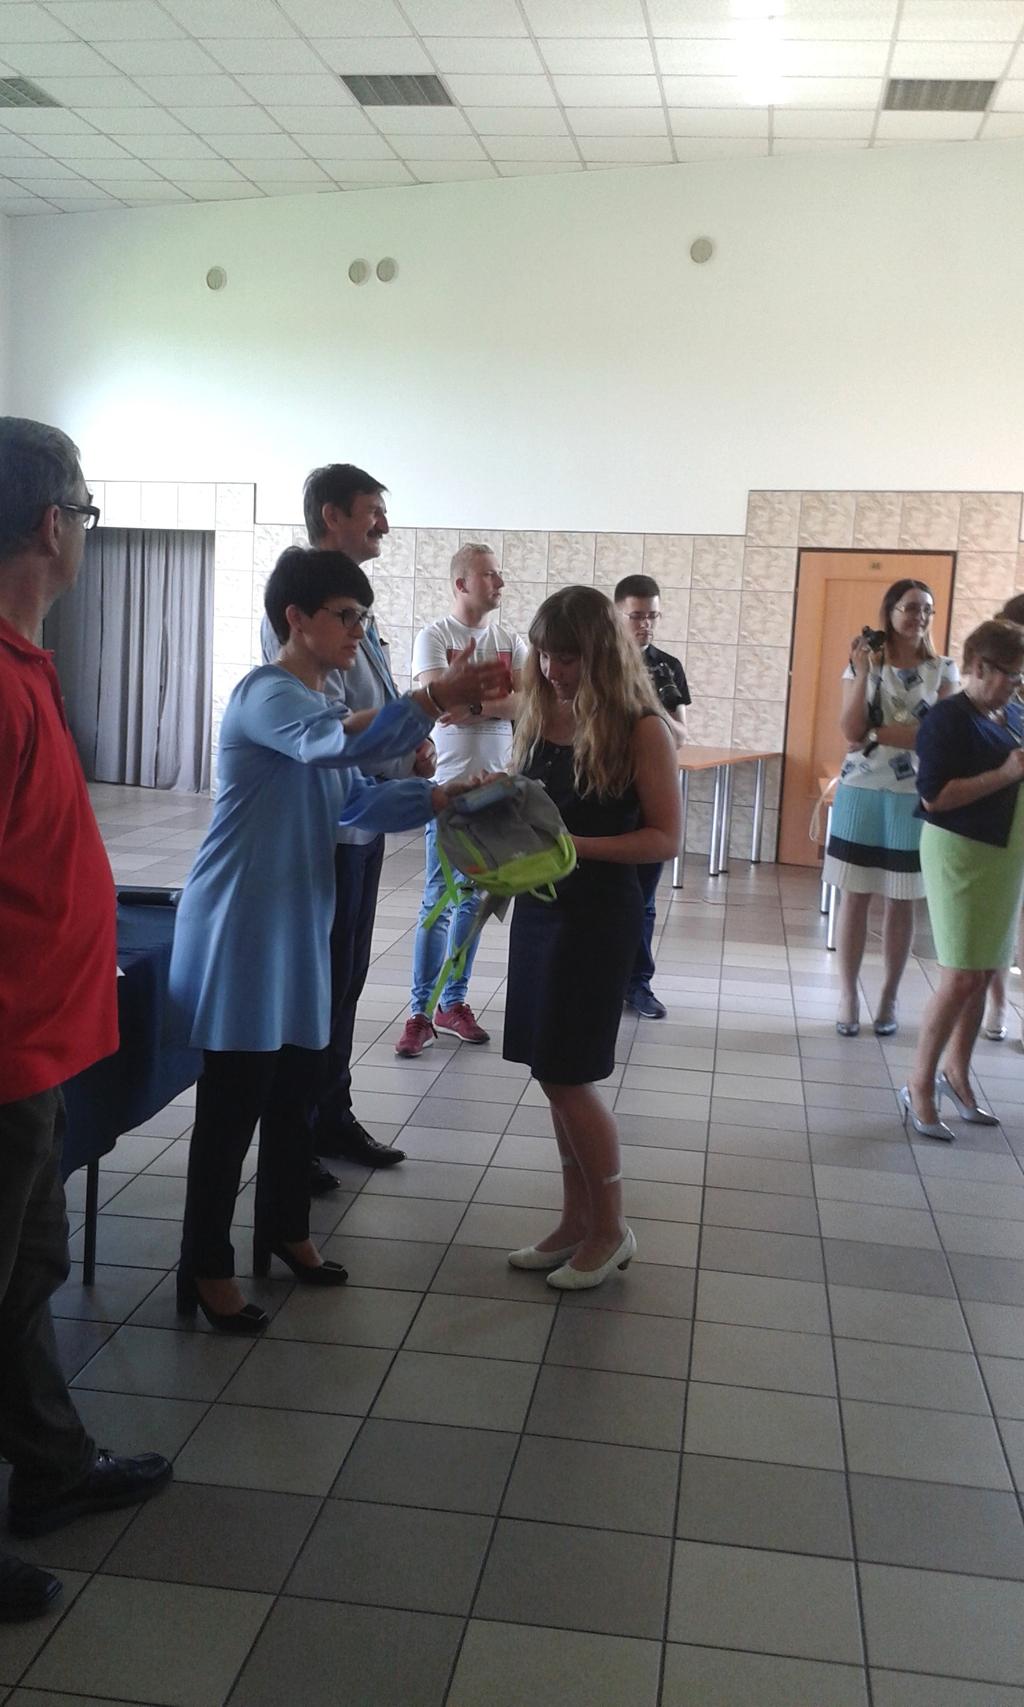 Wiktoria Krawczyk zakwalifikowała się do Międzypowiatowych Potyczek Matematycznych, które odbyły się maja w Łasku. Wiktoria zajęła III miejsce w swojej kategorii. Gratulujemy!